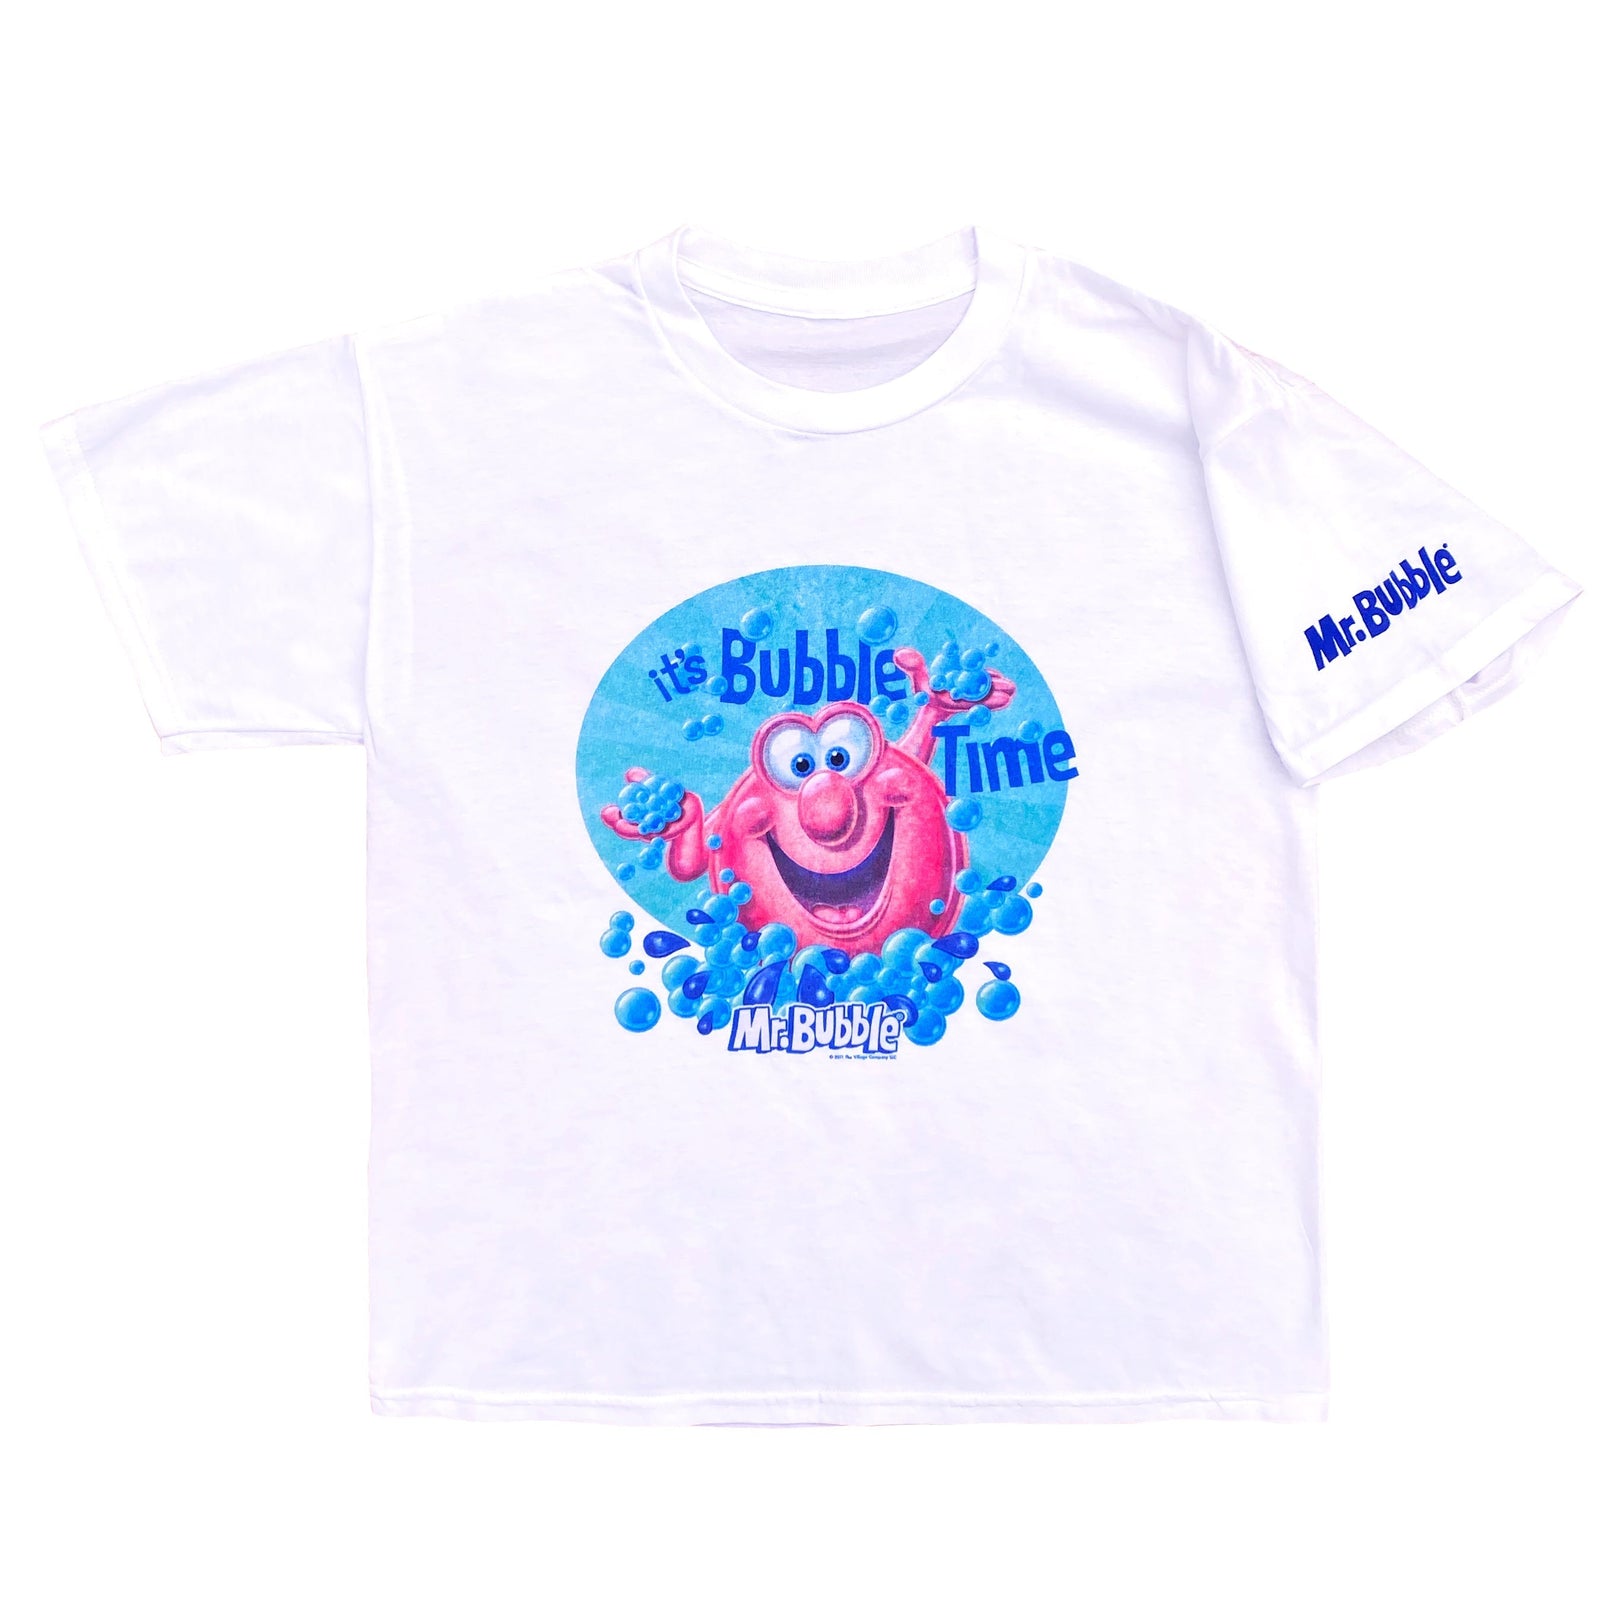 Mr. Bubble It's bubble time kids t-shirt